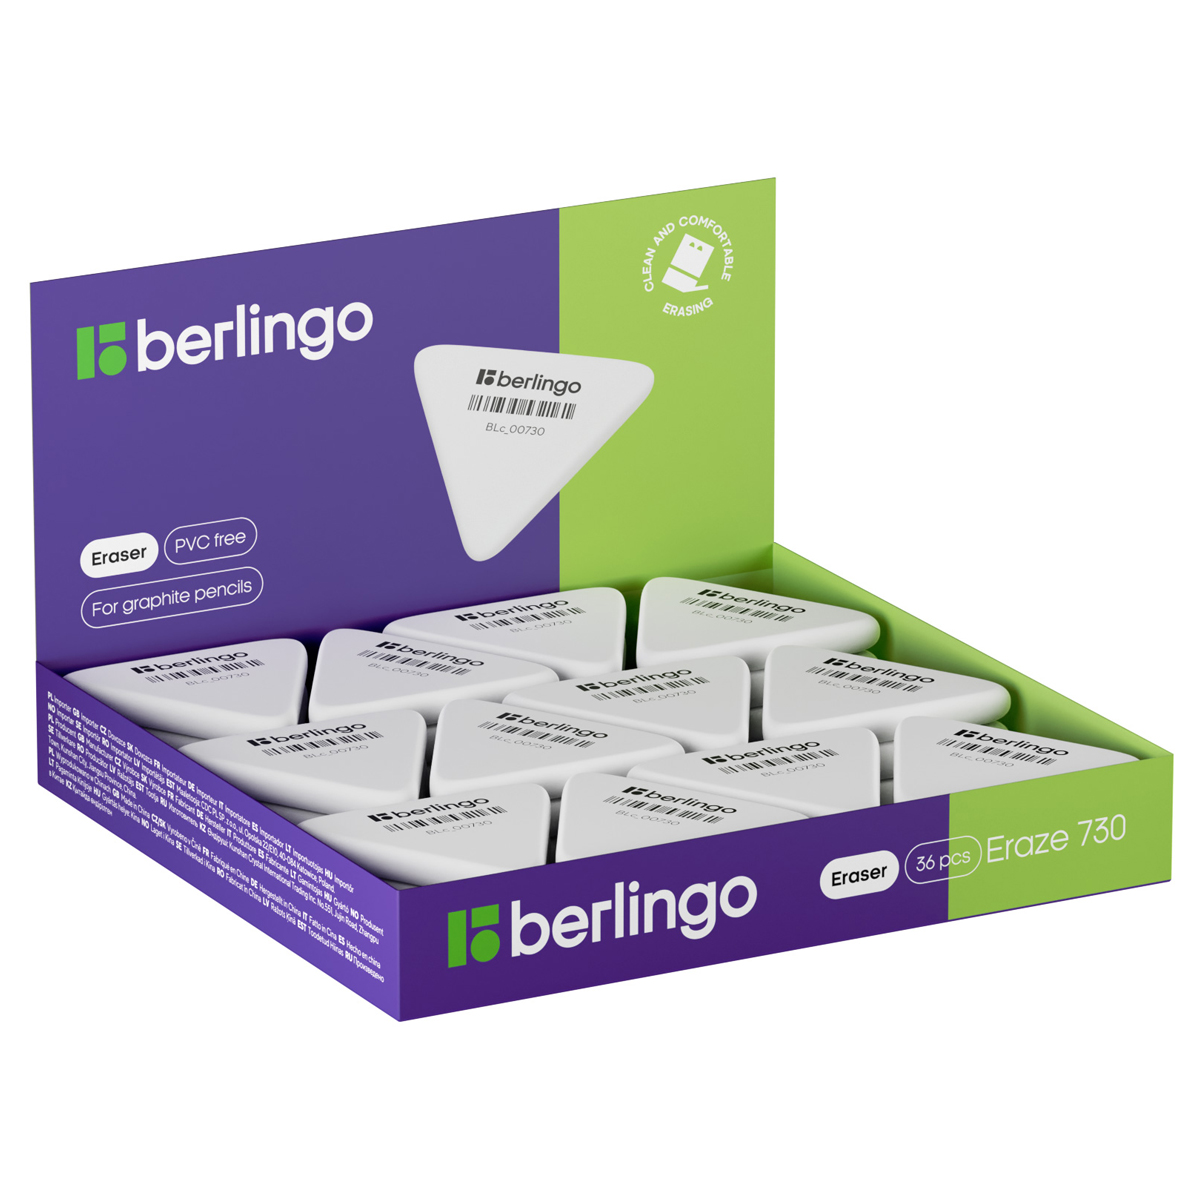 Ластик Berlingo Eraze 730 треугольный, термопластичная резина, 50*44*7мм (большой) (Вид 1)